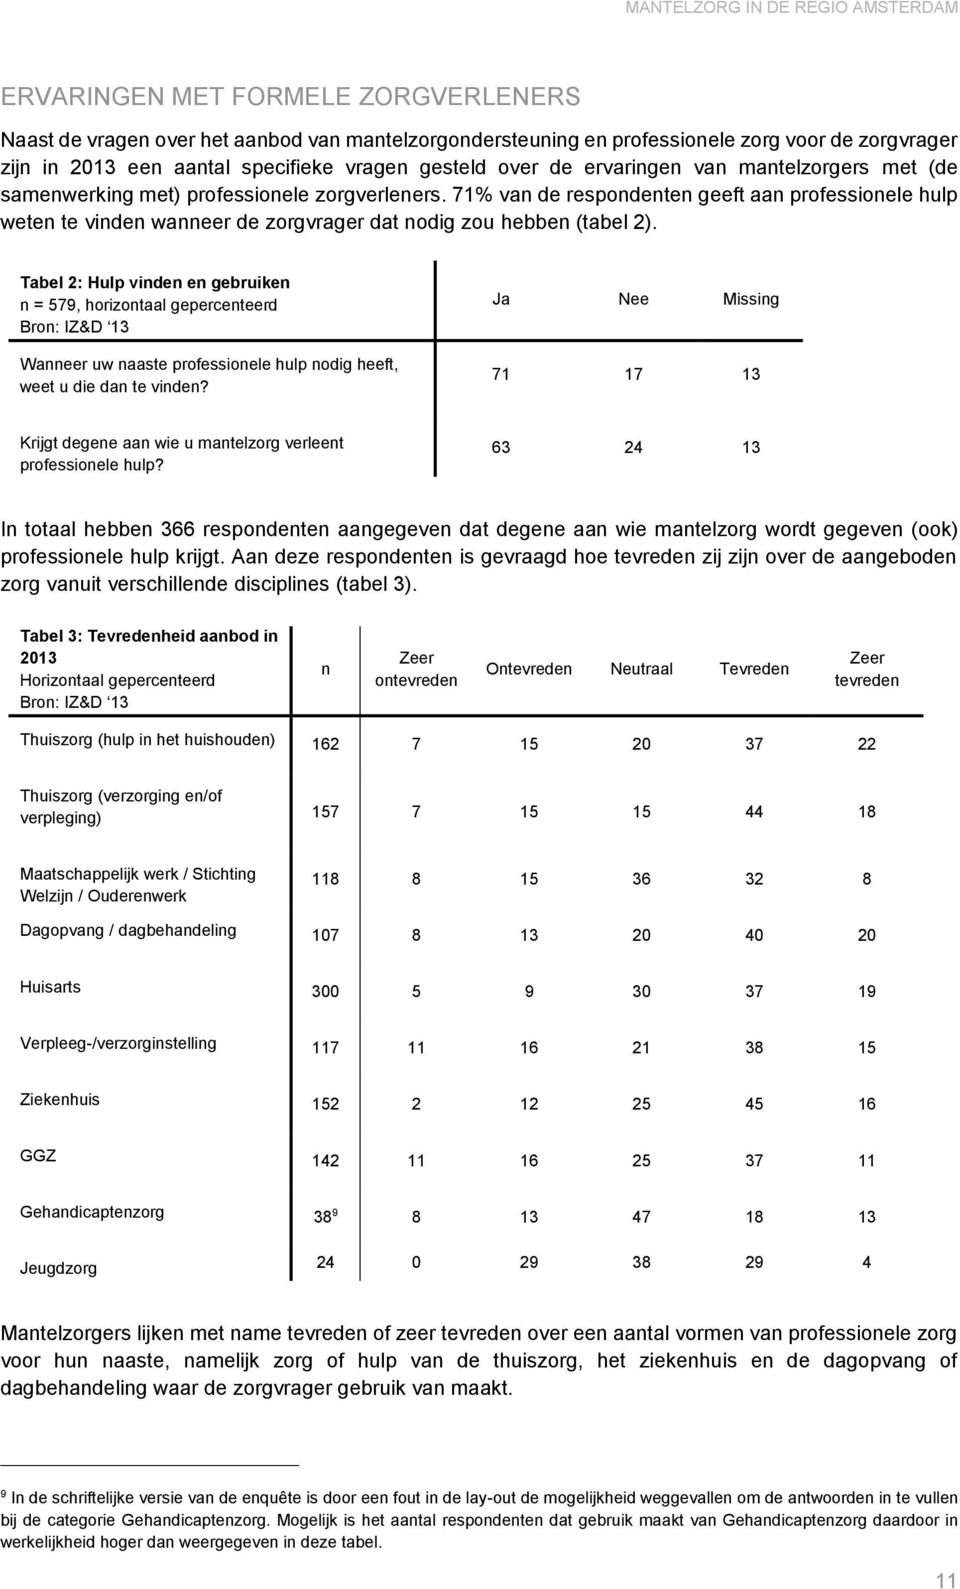 71% van de respondenten geeft aan professionele hulp weten te vinden wanneer de zorgvrager dat nodig zou hebben (tabel 2).